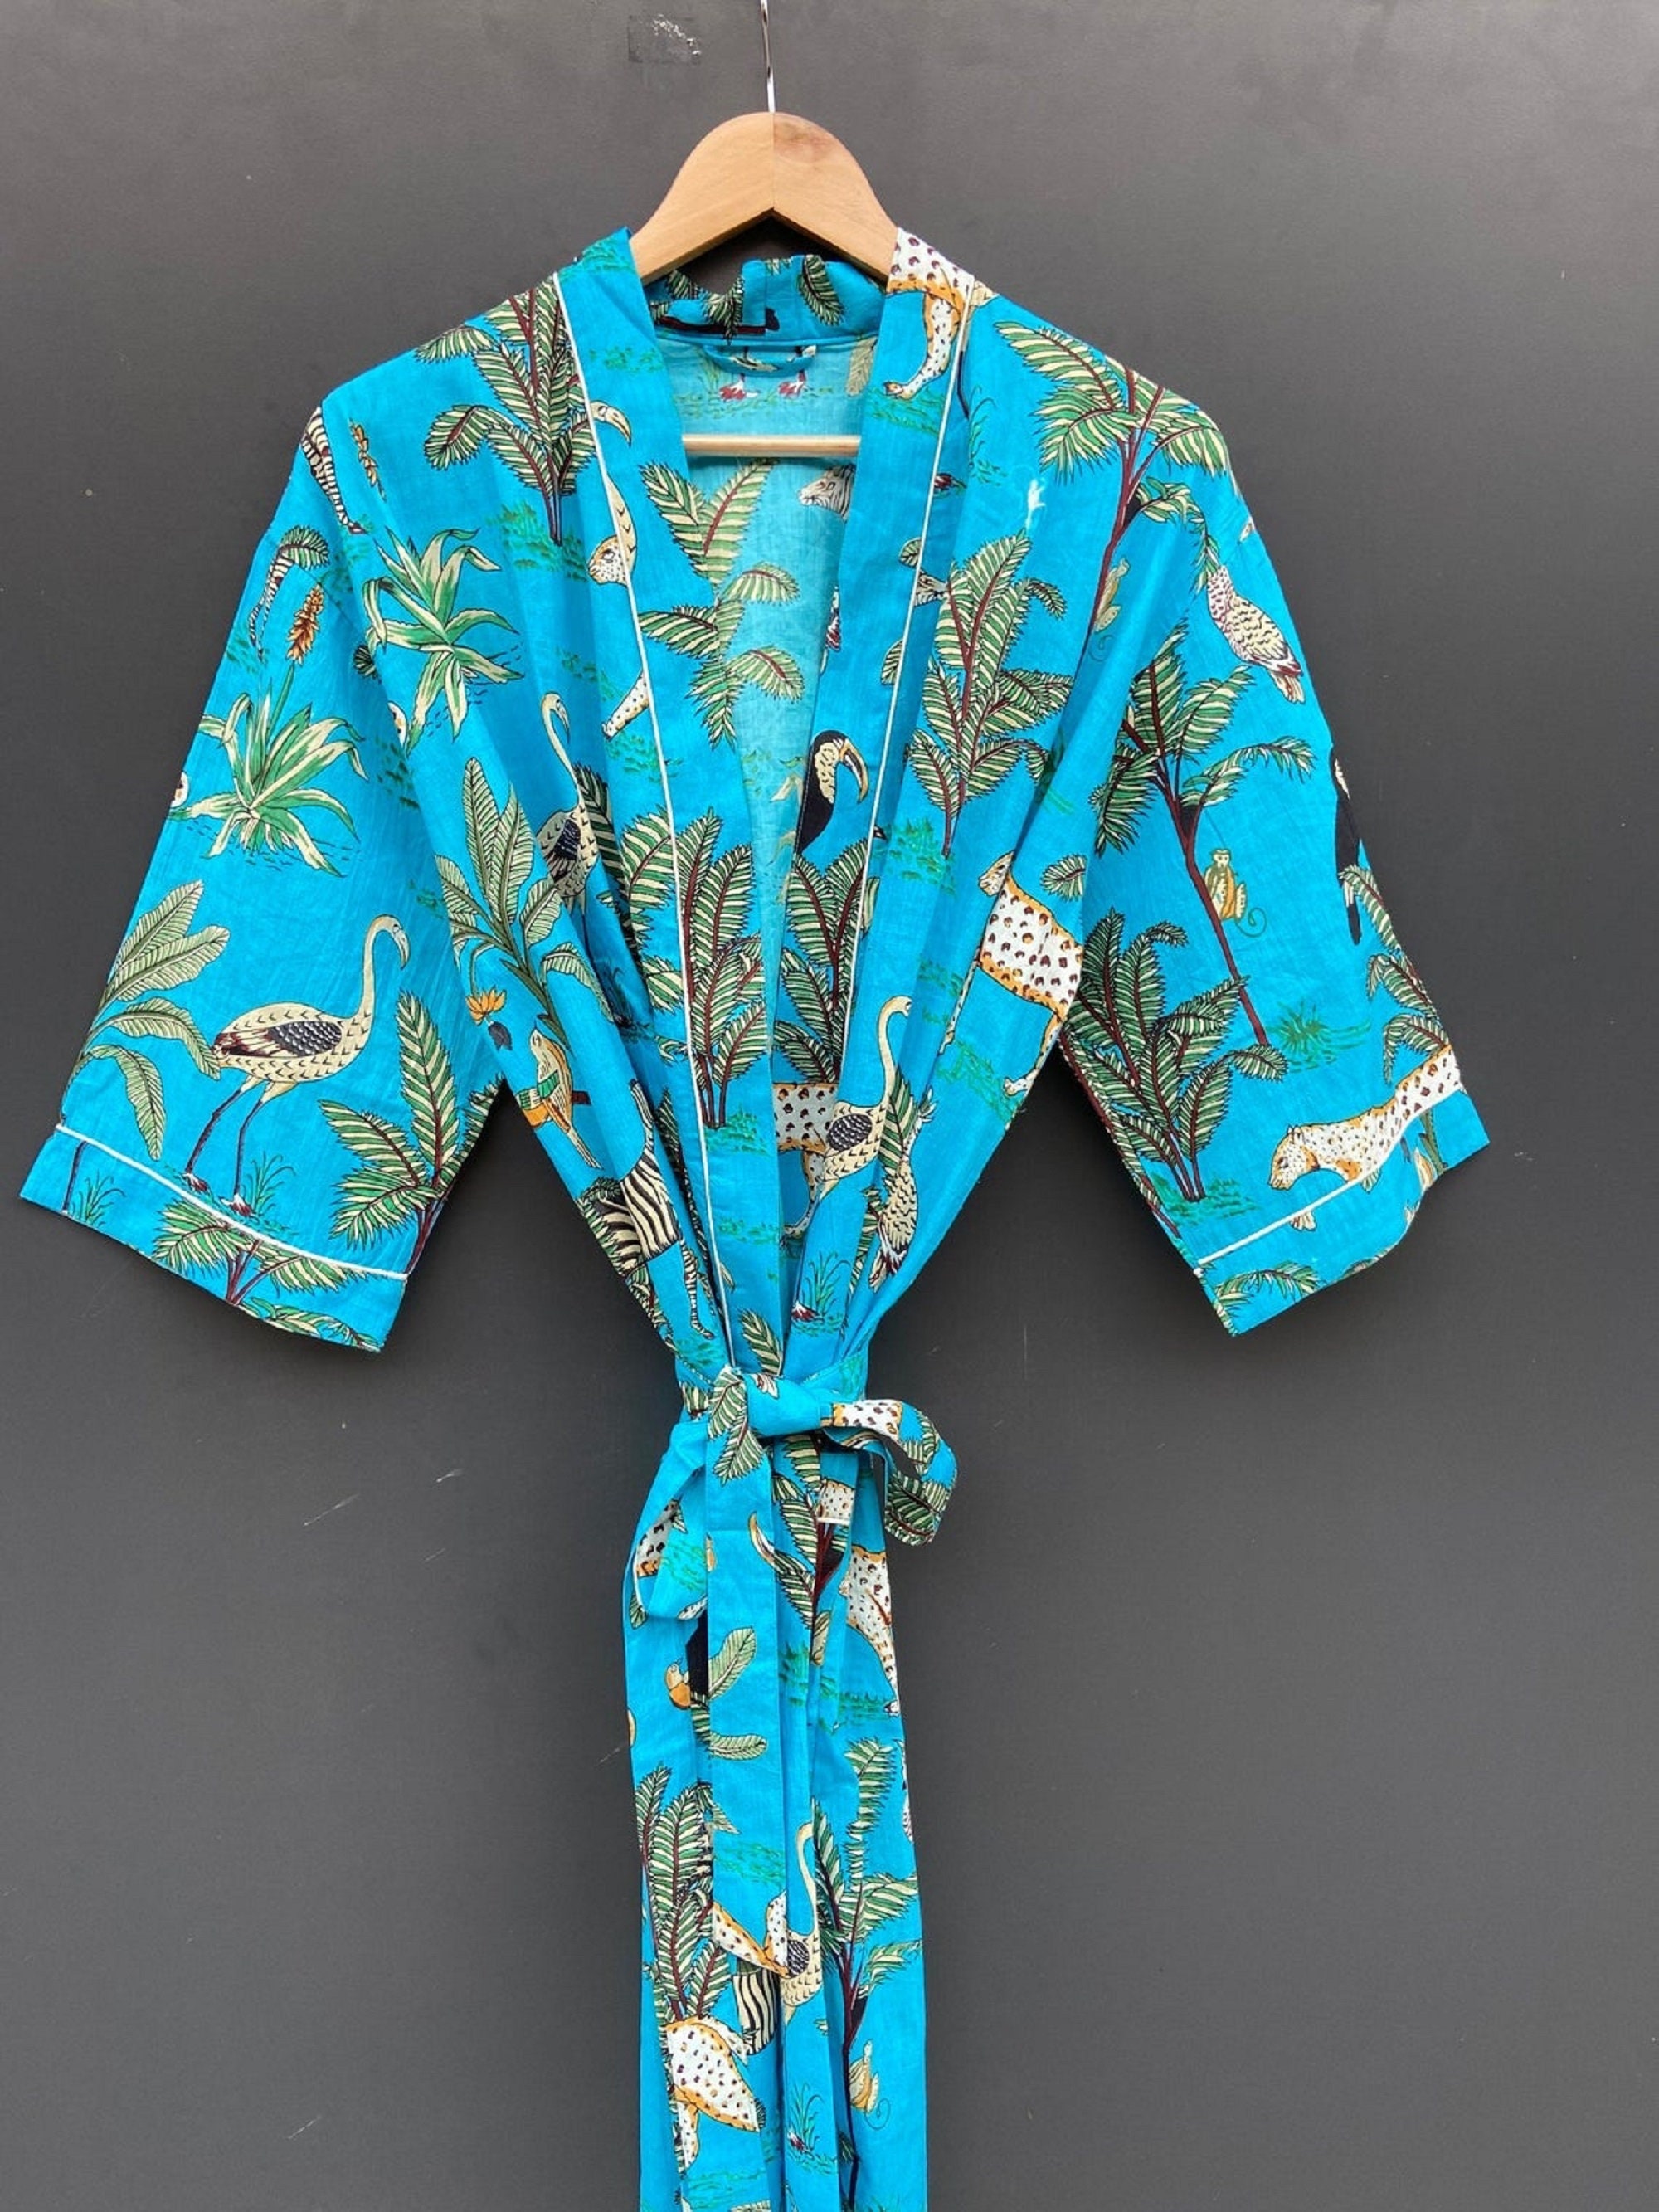 Long Cotton Kimono Bath robe Wild Life Animal print Kimono | Etsy